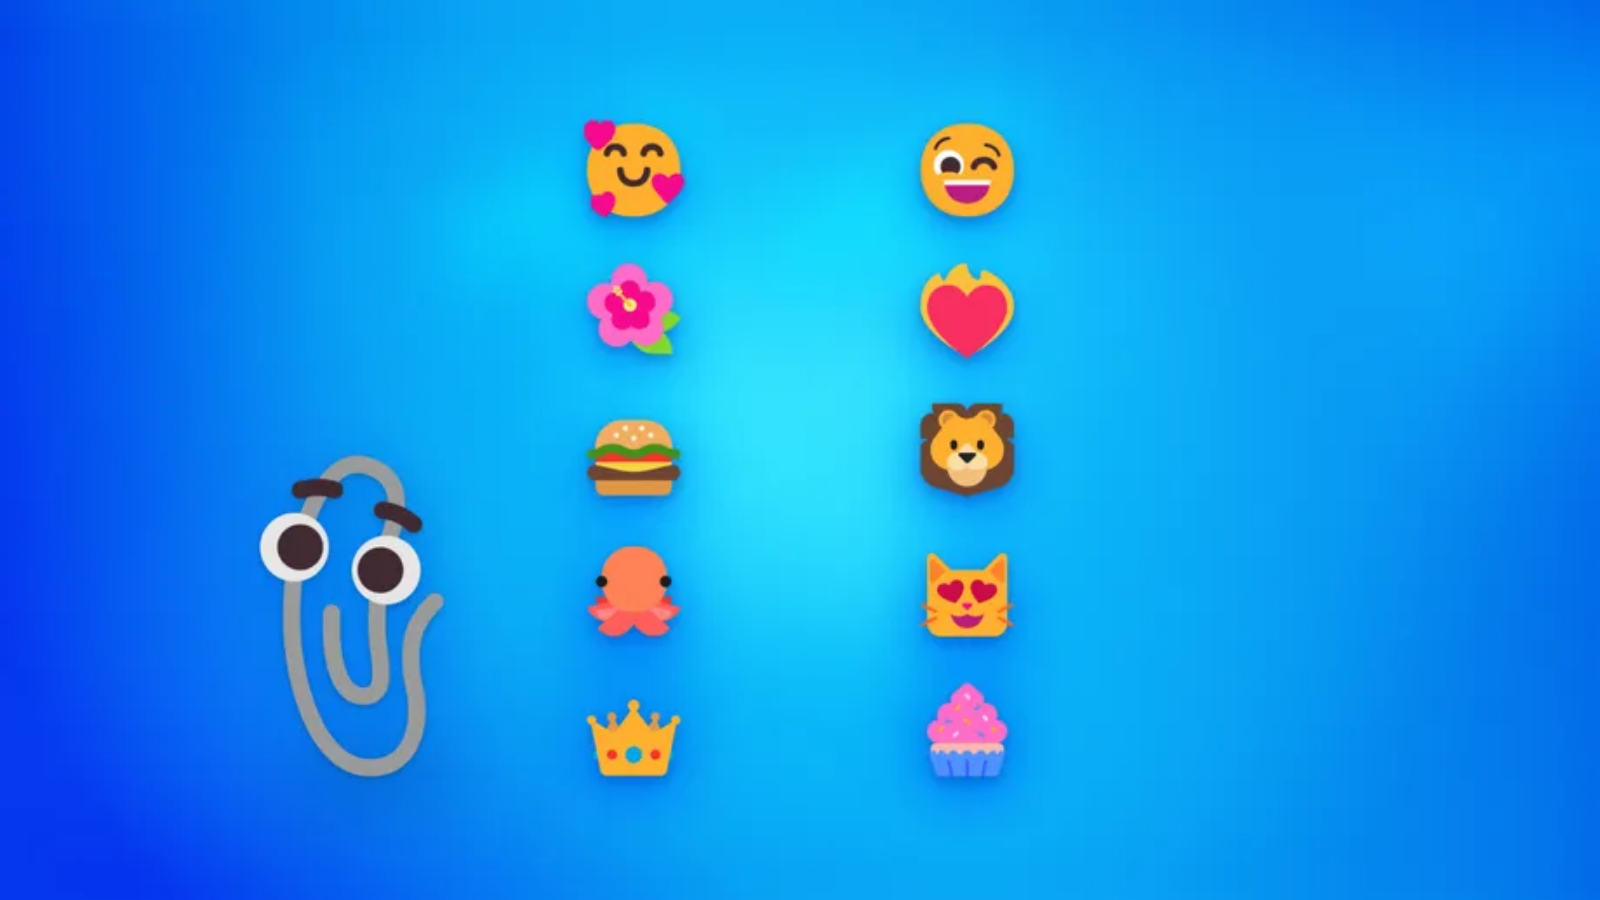 Em breve veremos novos emojis no windows 11